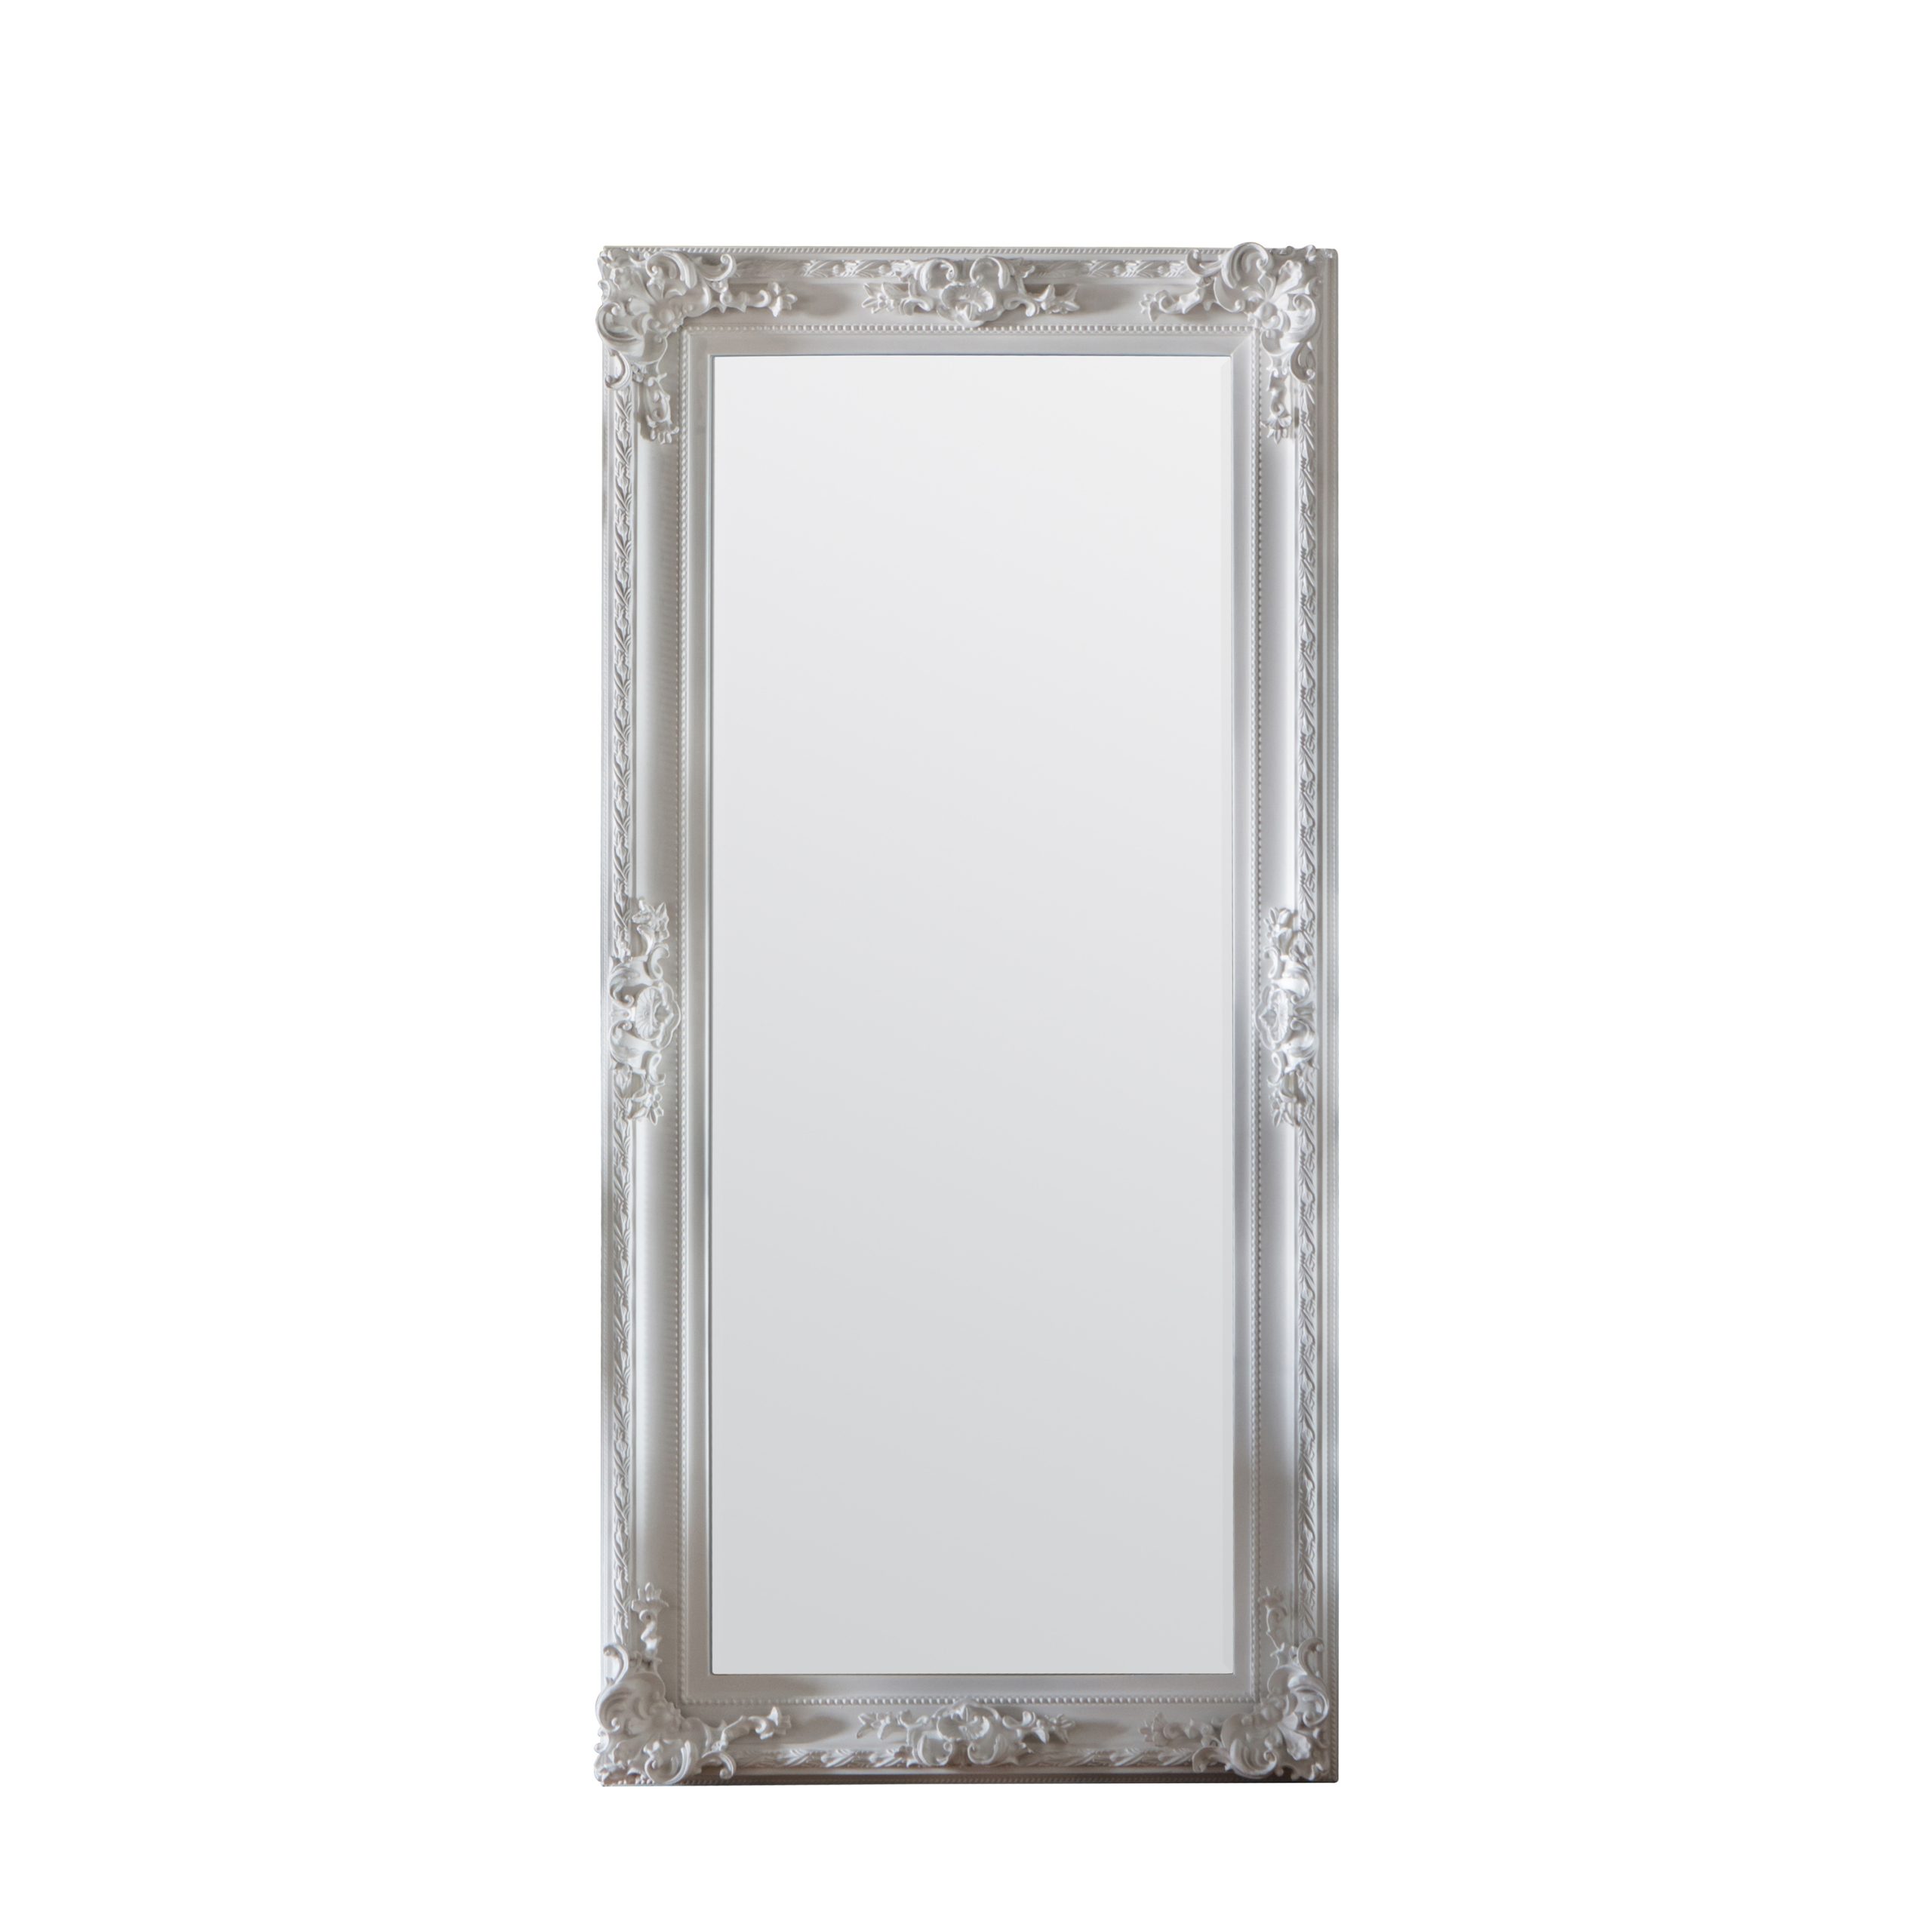 Gallery Direct Altori Leaner Mirror White